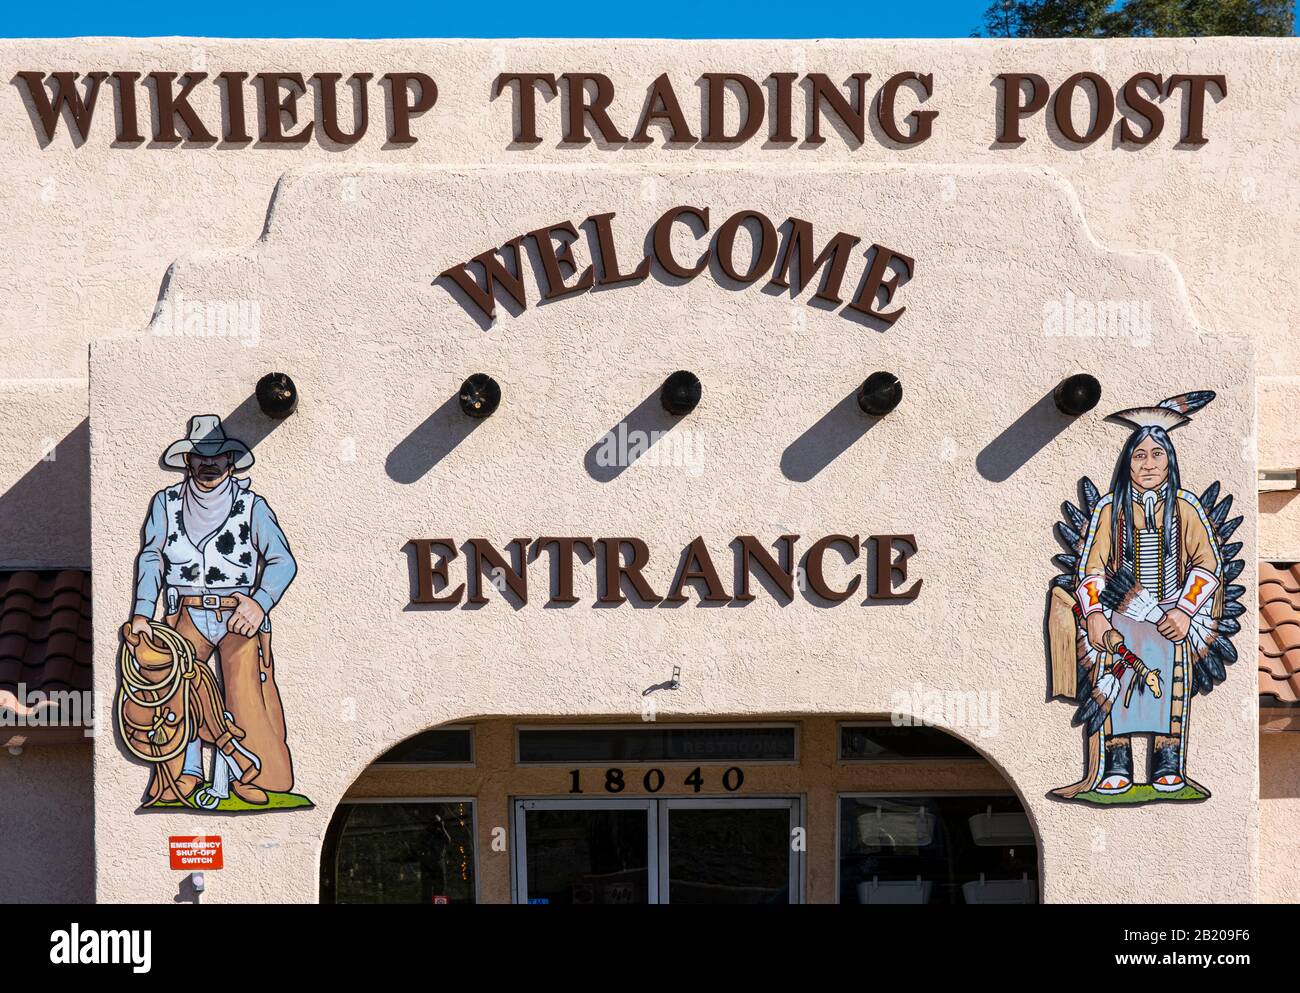 Wikieup Trading Post, 8040 US-93, Wikieup, AZ 85360, United States Stock Photo